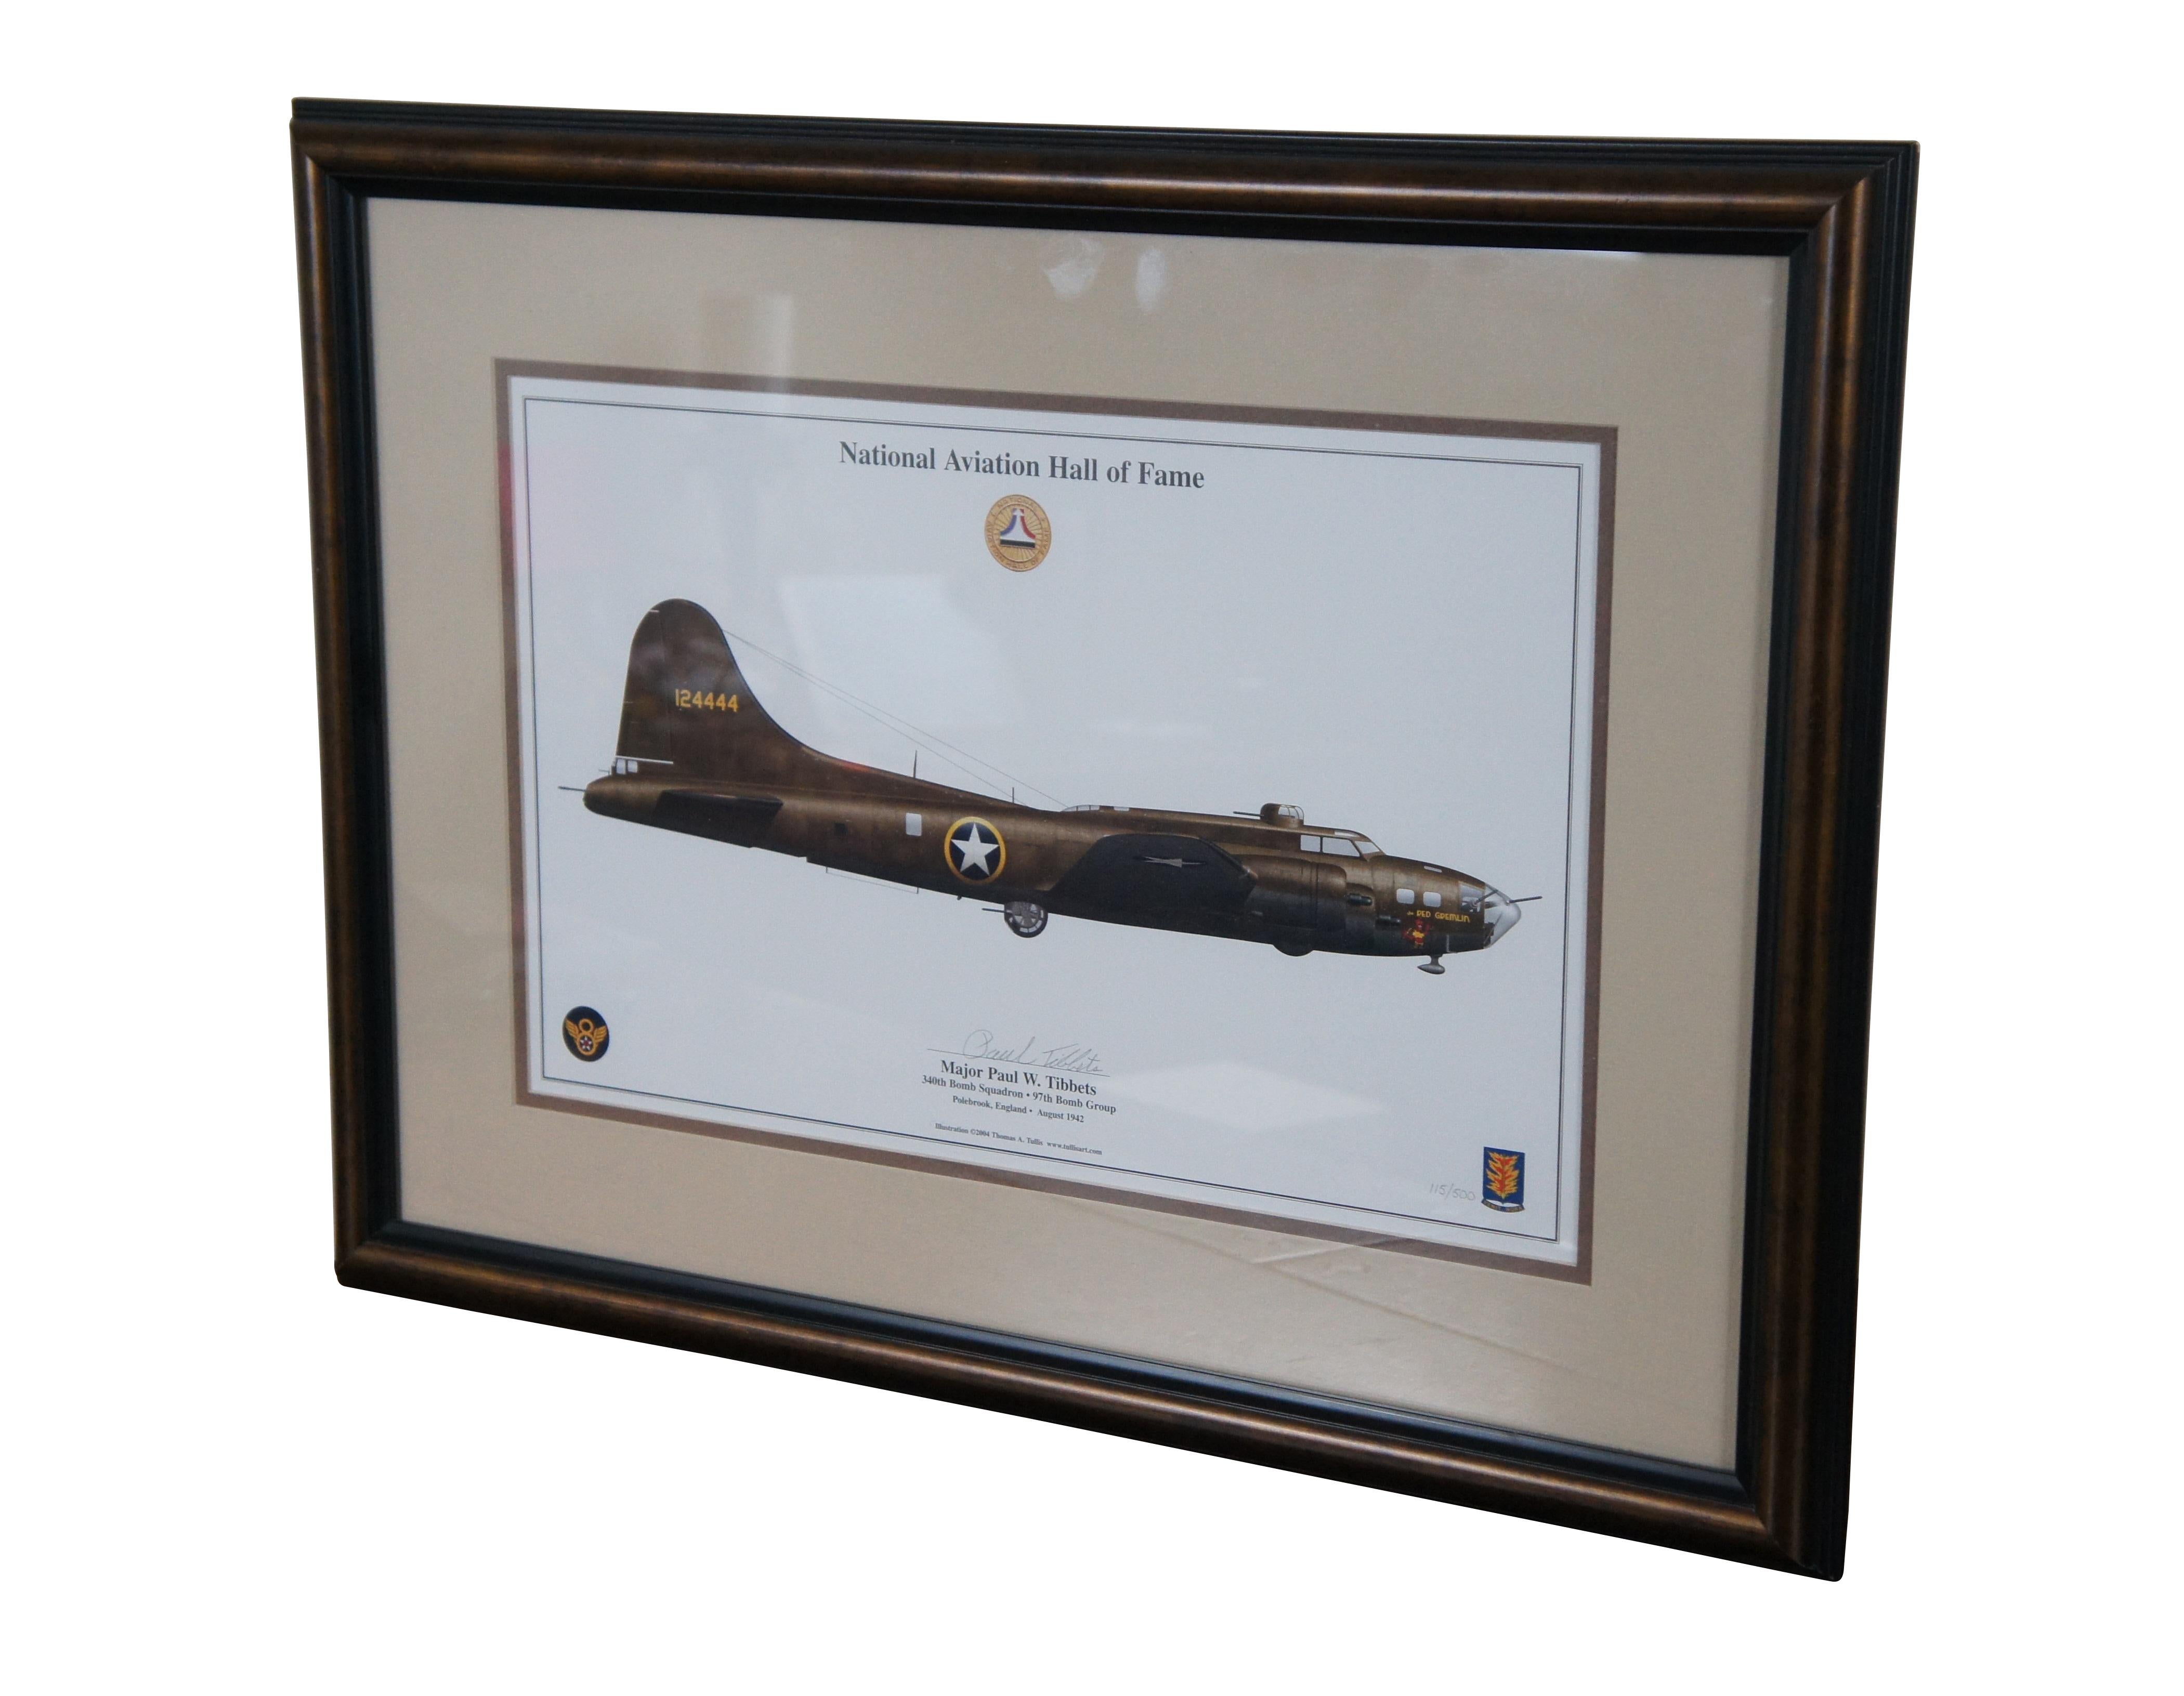 Série de tirages en édition limitée du National Aviation Hall of Fame, signés, numérotés et professionnellement encadrés

Major Paul W. Tibbets S.N.A. Print, B-17 Gremlin. 340e escadron de bombardement, 97e groupe de bombardement.

Édition 115 de